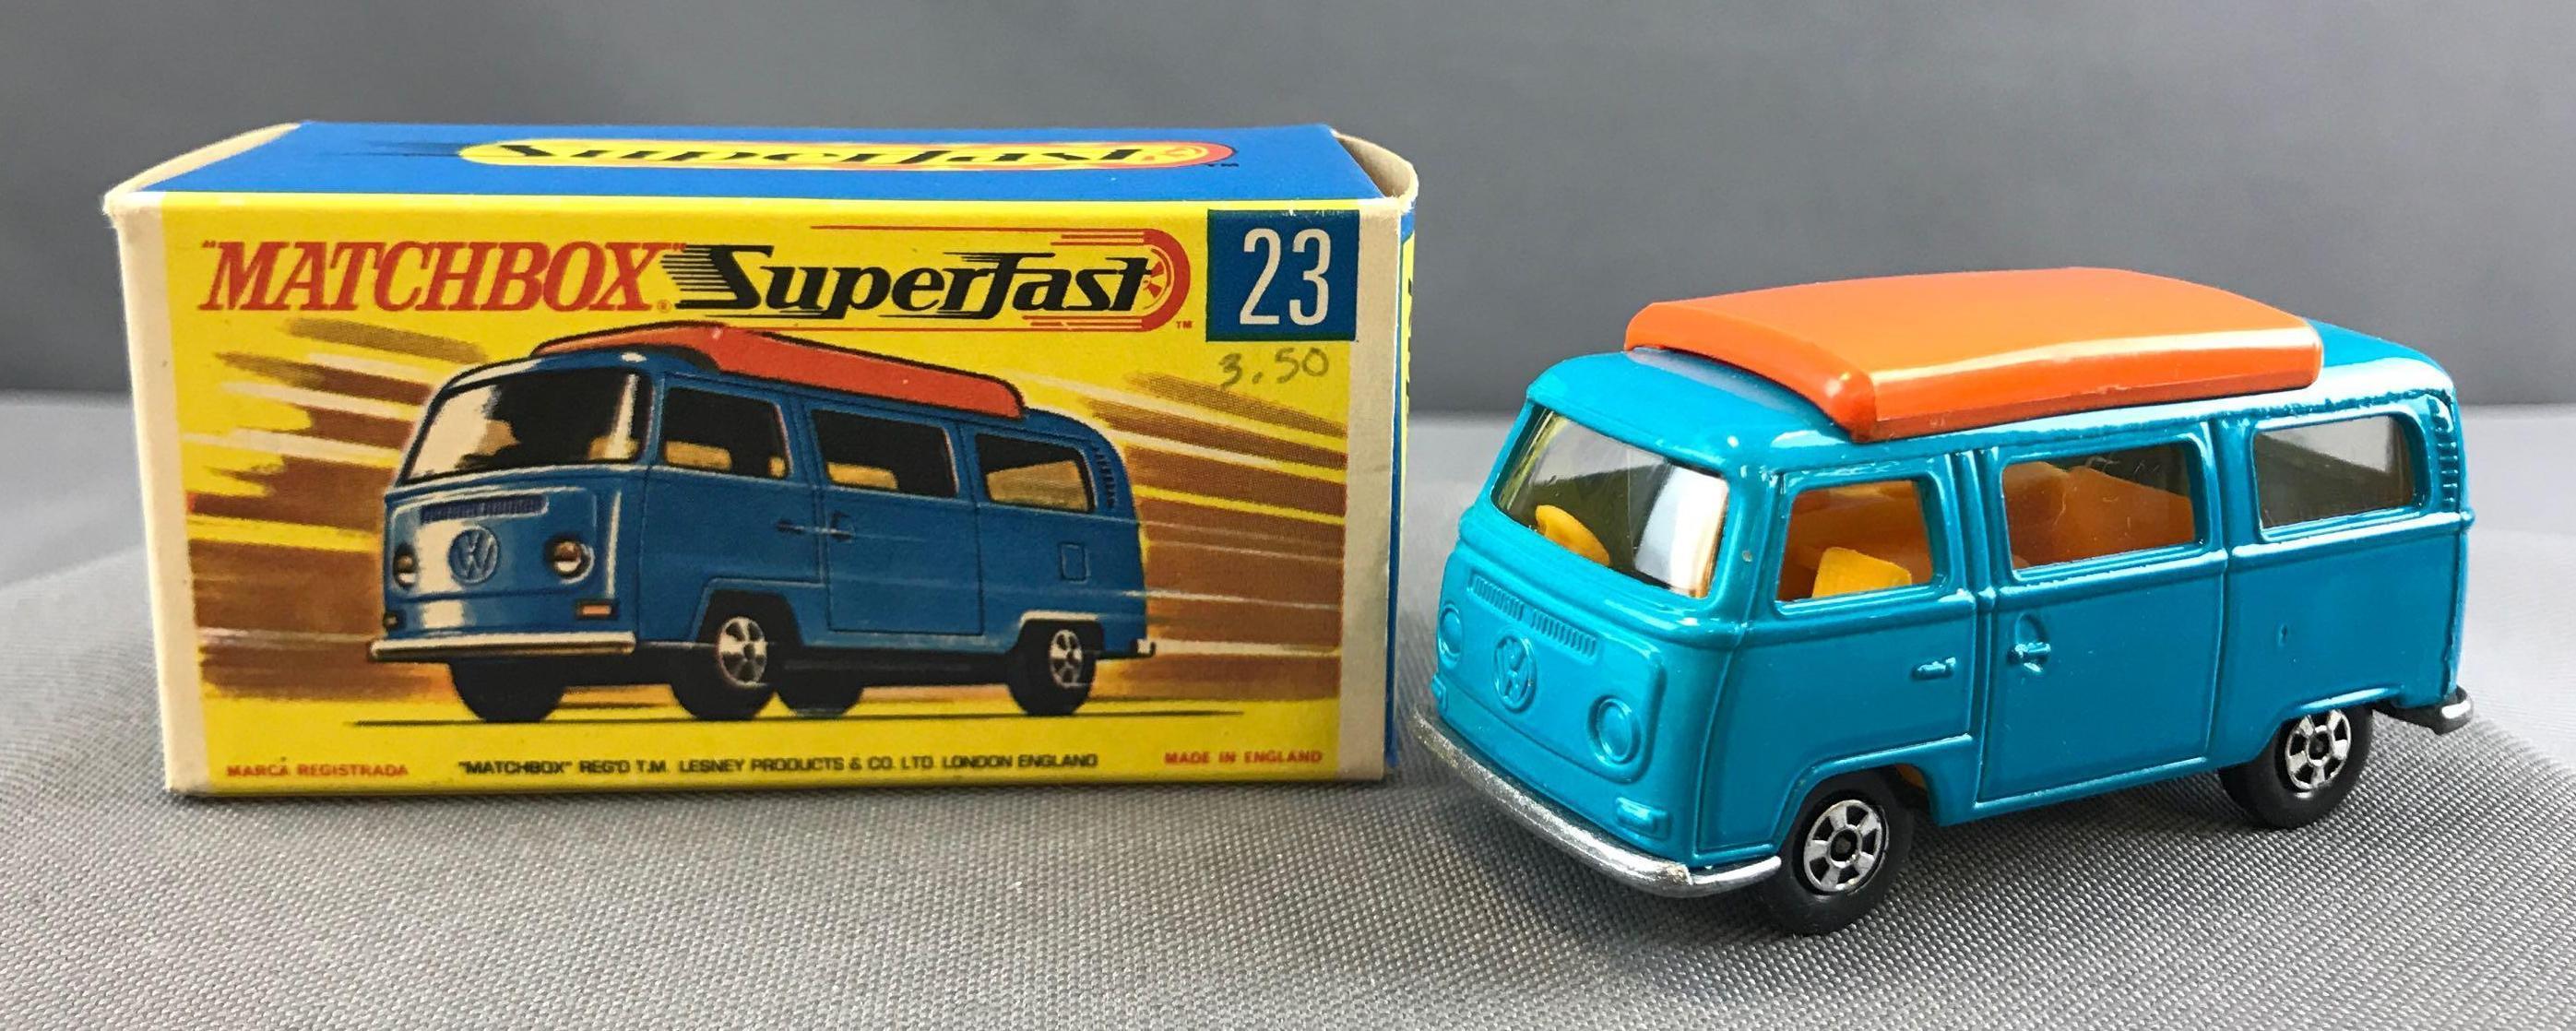 Matchbox Superfast No. 23 Volkswagen Camper die cast vehicle with Original Box